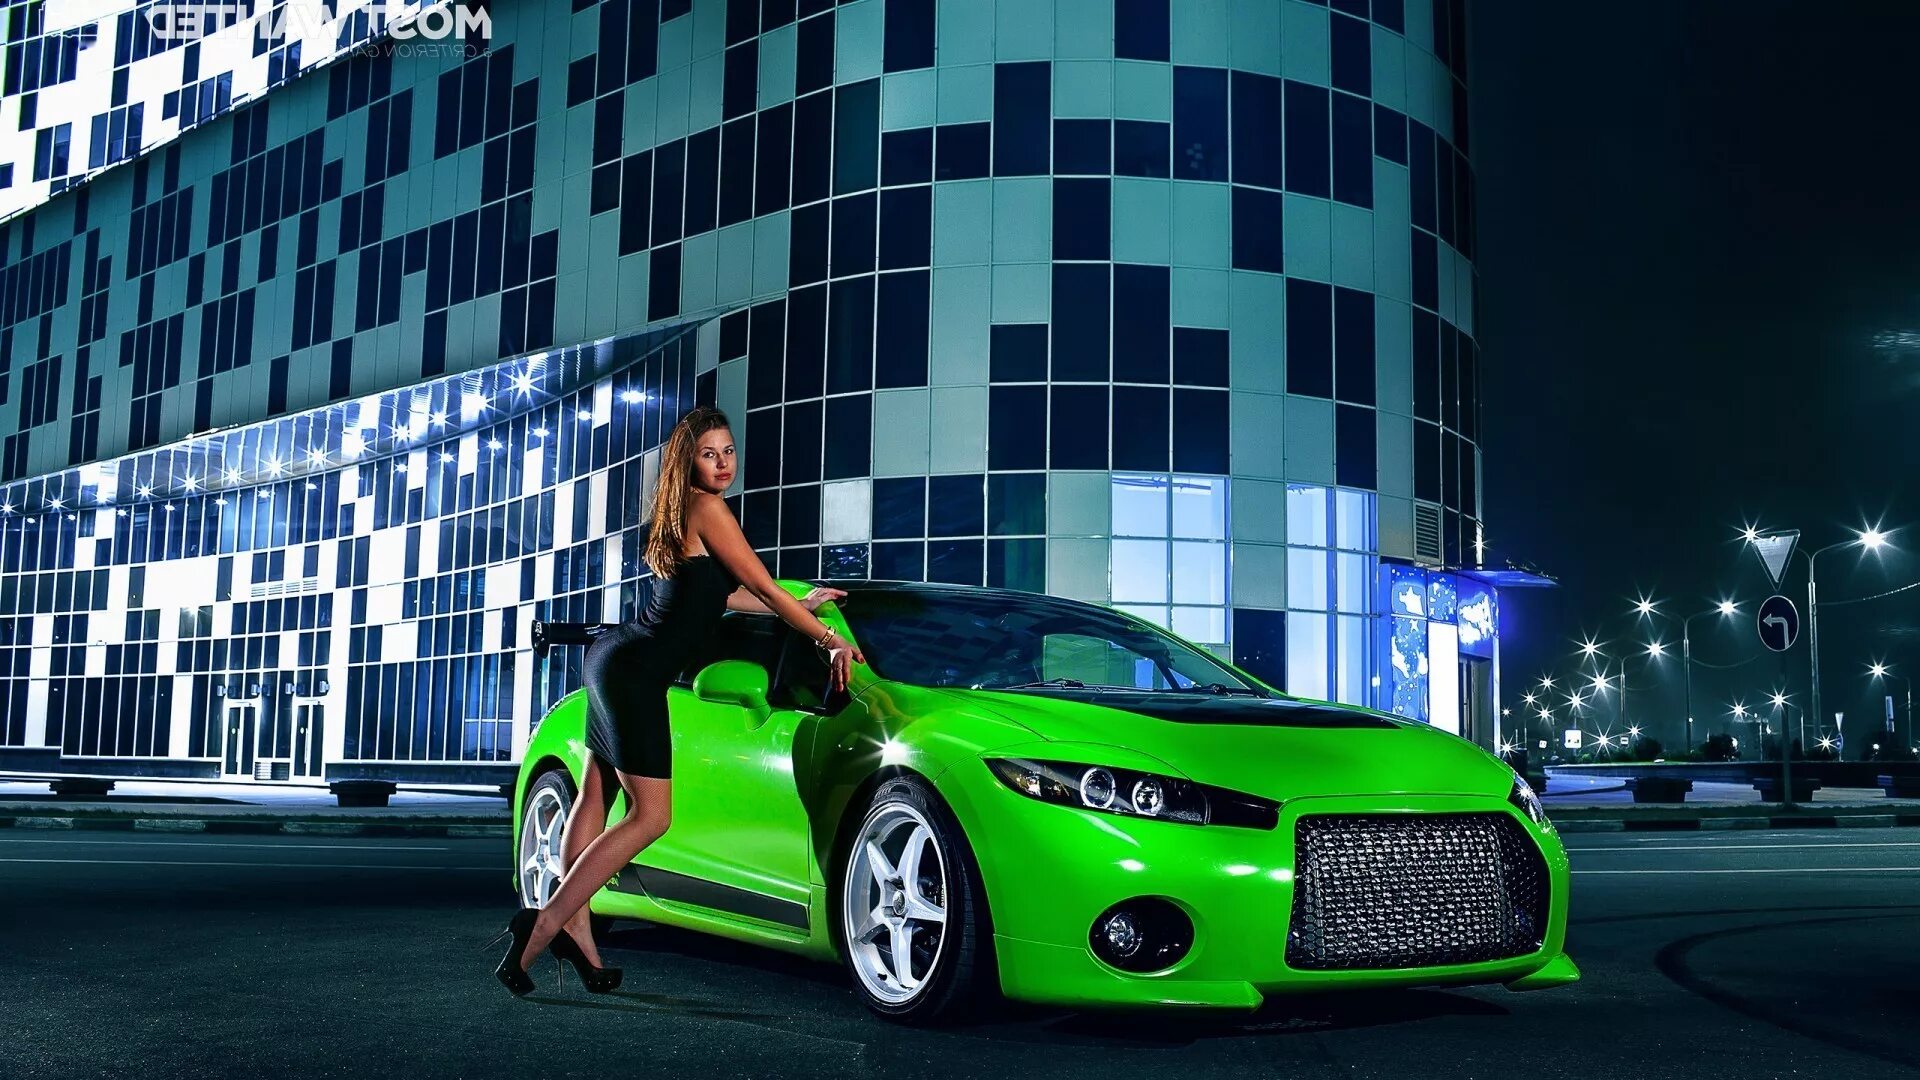 06 ru 2015. Яркие машины. Девушка в машине. Зеленый автомобиль. Яркие цвета автомобилей.